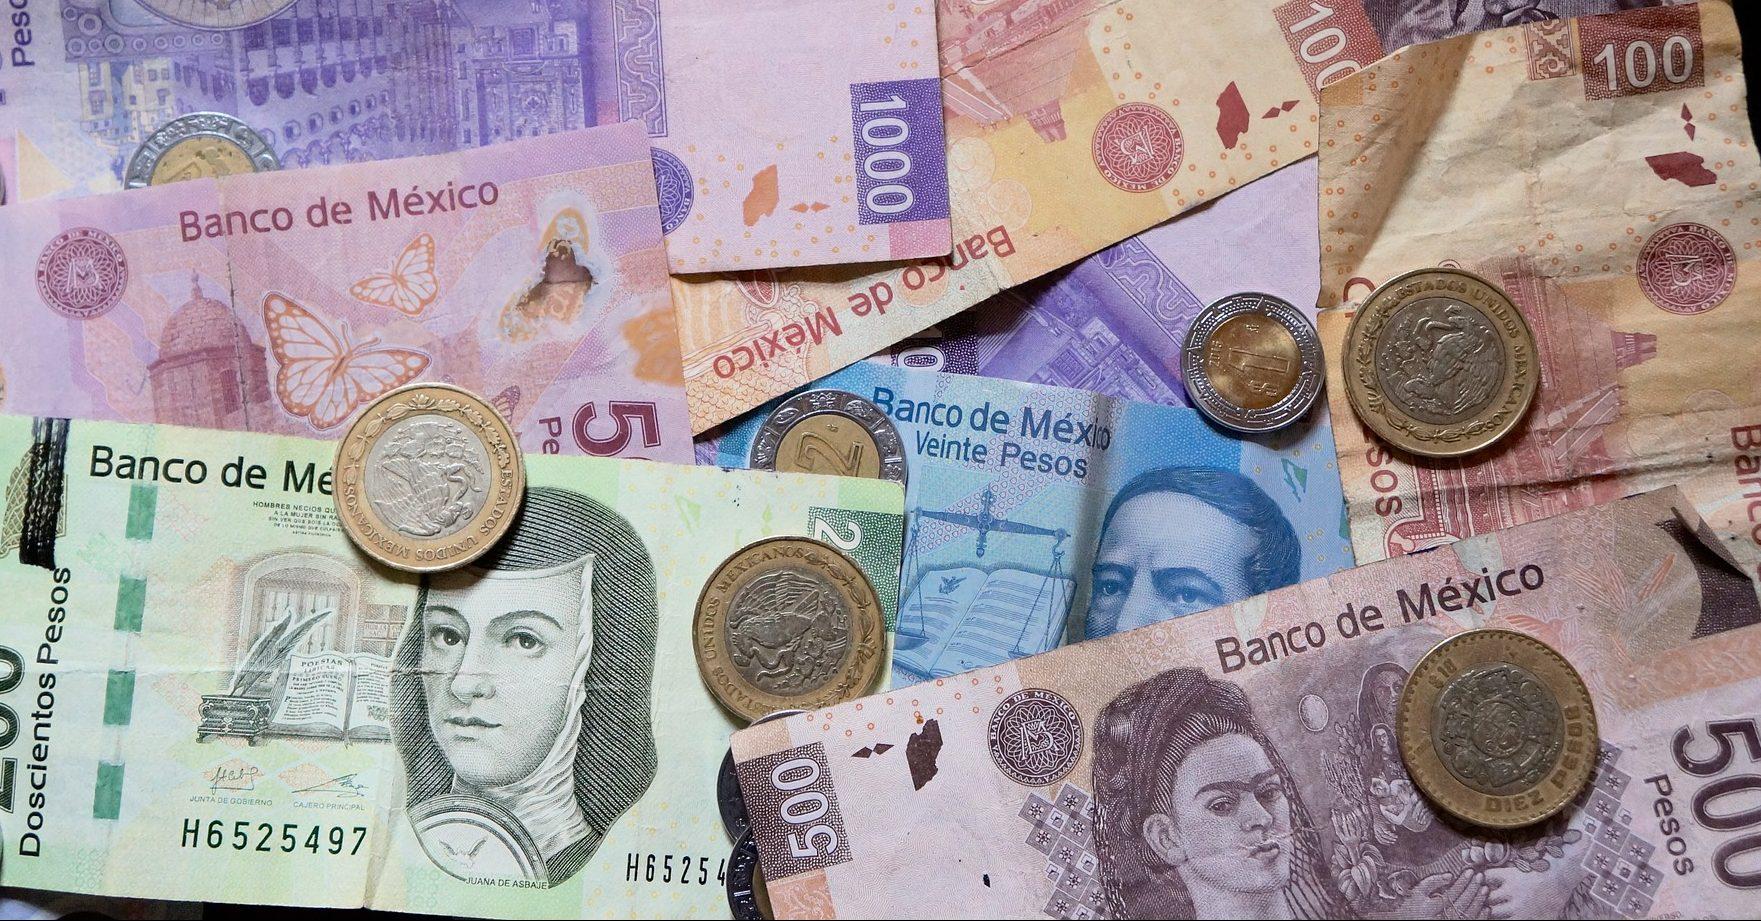 La inversión extranjera en Veracruz disminuyó en el segundo trimestre de 2019